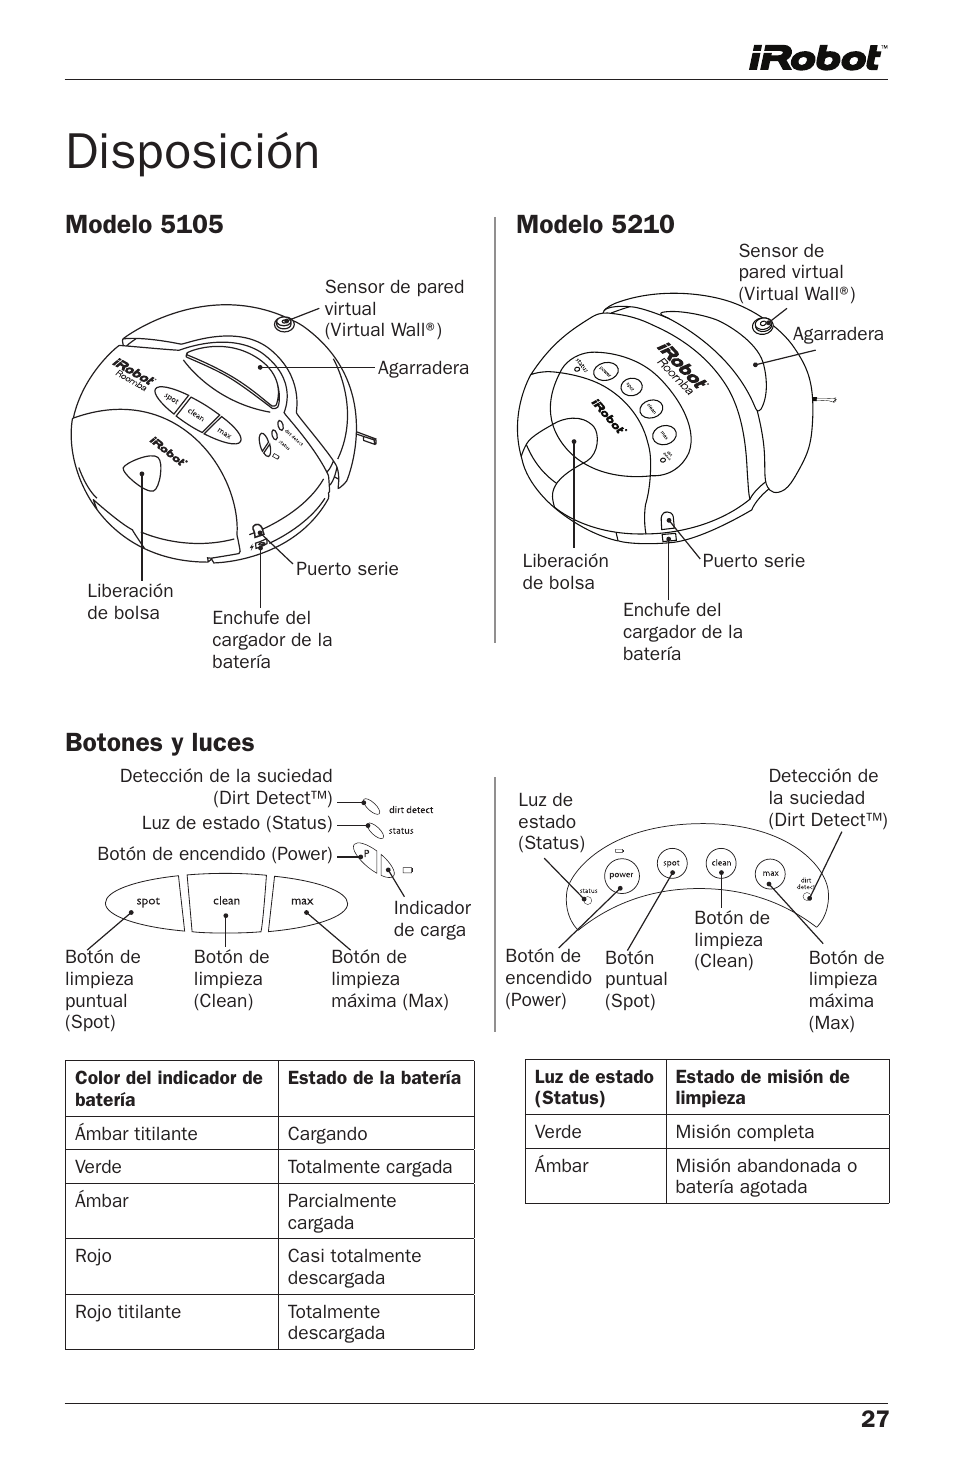 Disposición, Botones y luces modelo 5105, Modelo 5210 | iRobot Roomba 400  Series User Manual | Page 3 / 8